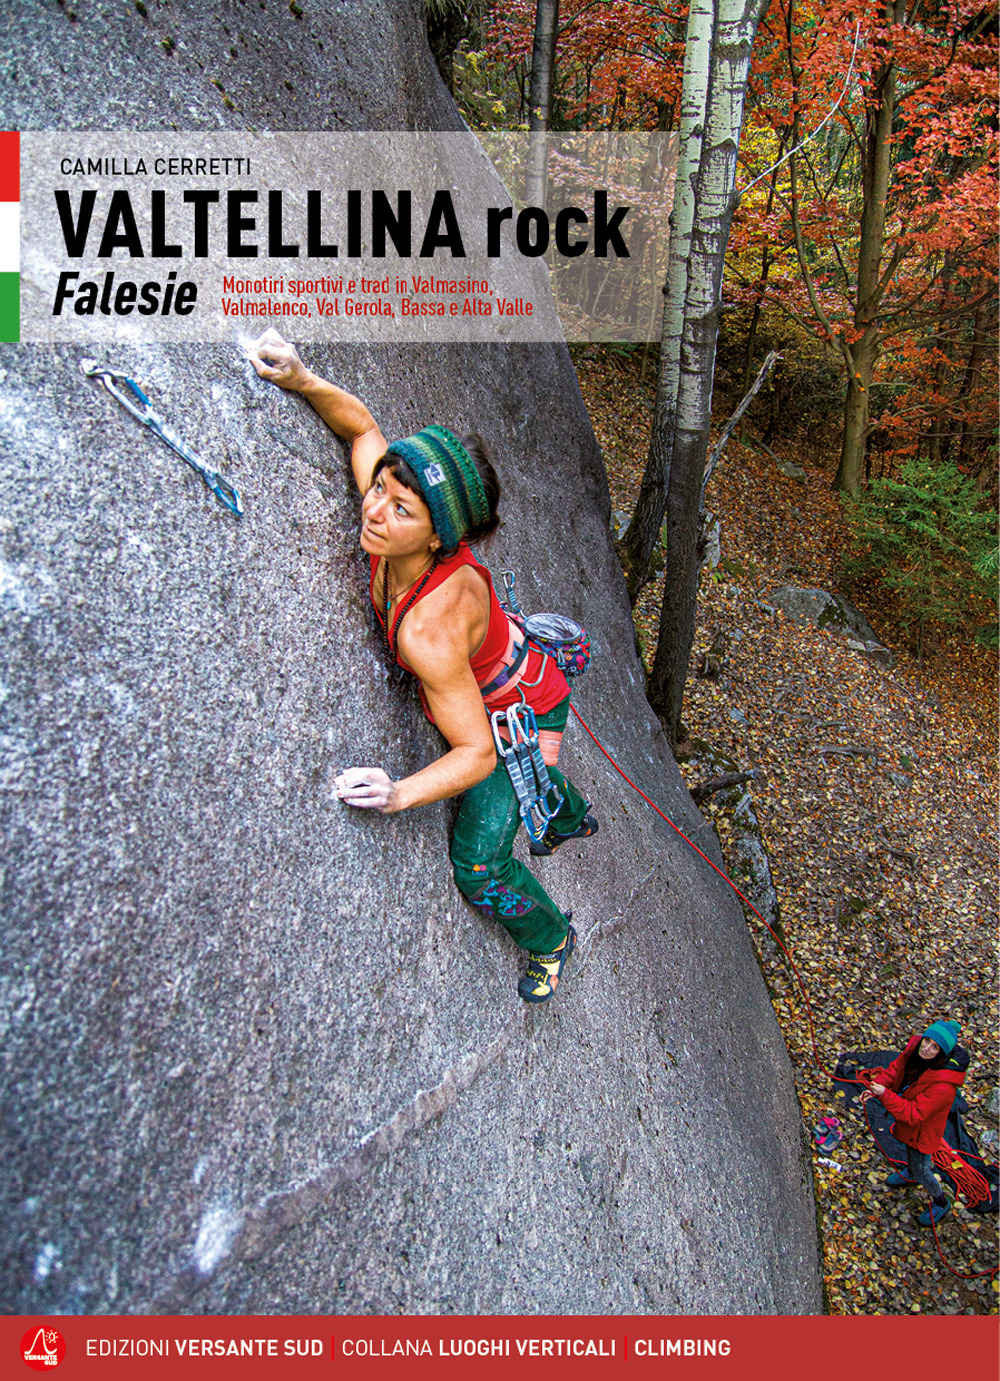 Valtellina rock. Falesie. Monotiri sportivi e trad in Valmasino, Valmalenco, Val Gerola, Bassa e Alta Valle